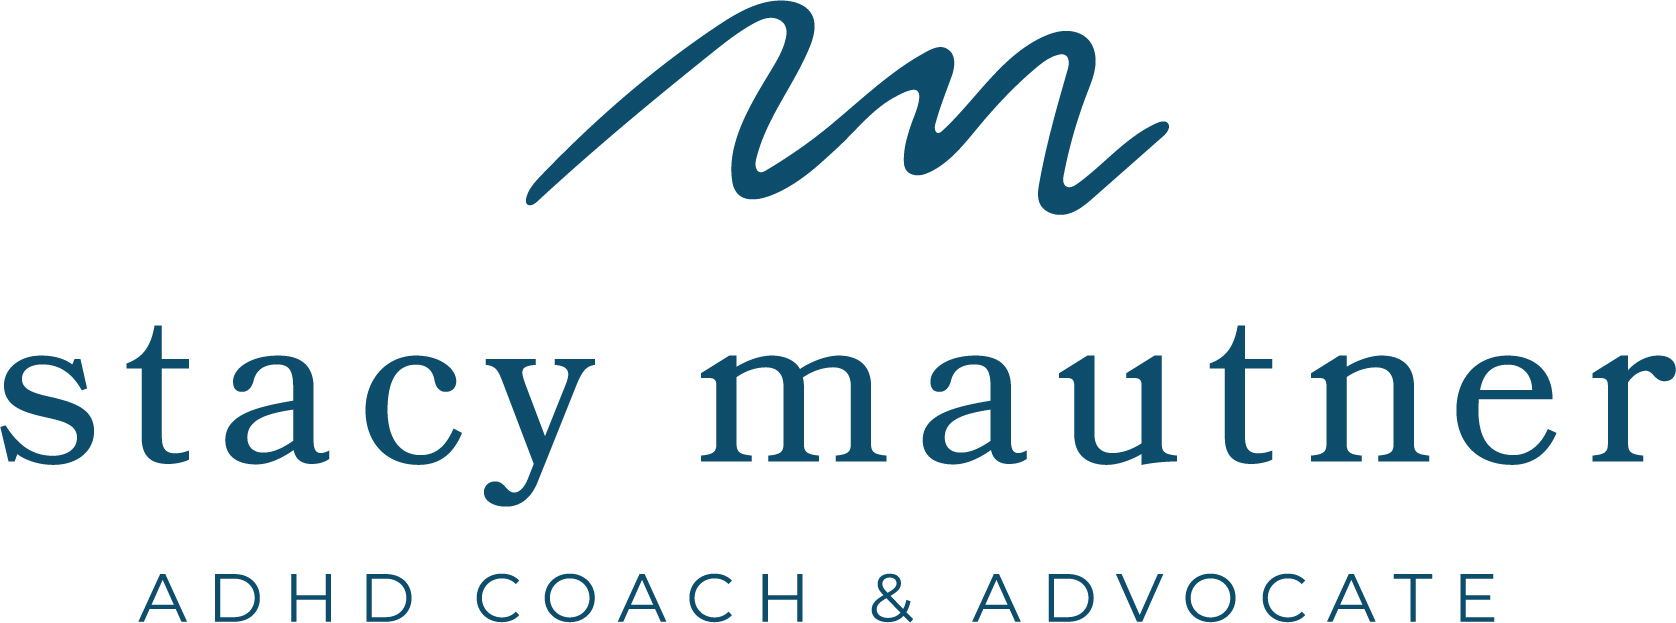 Stacy Mautner Logo